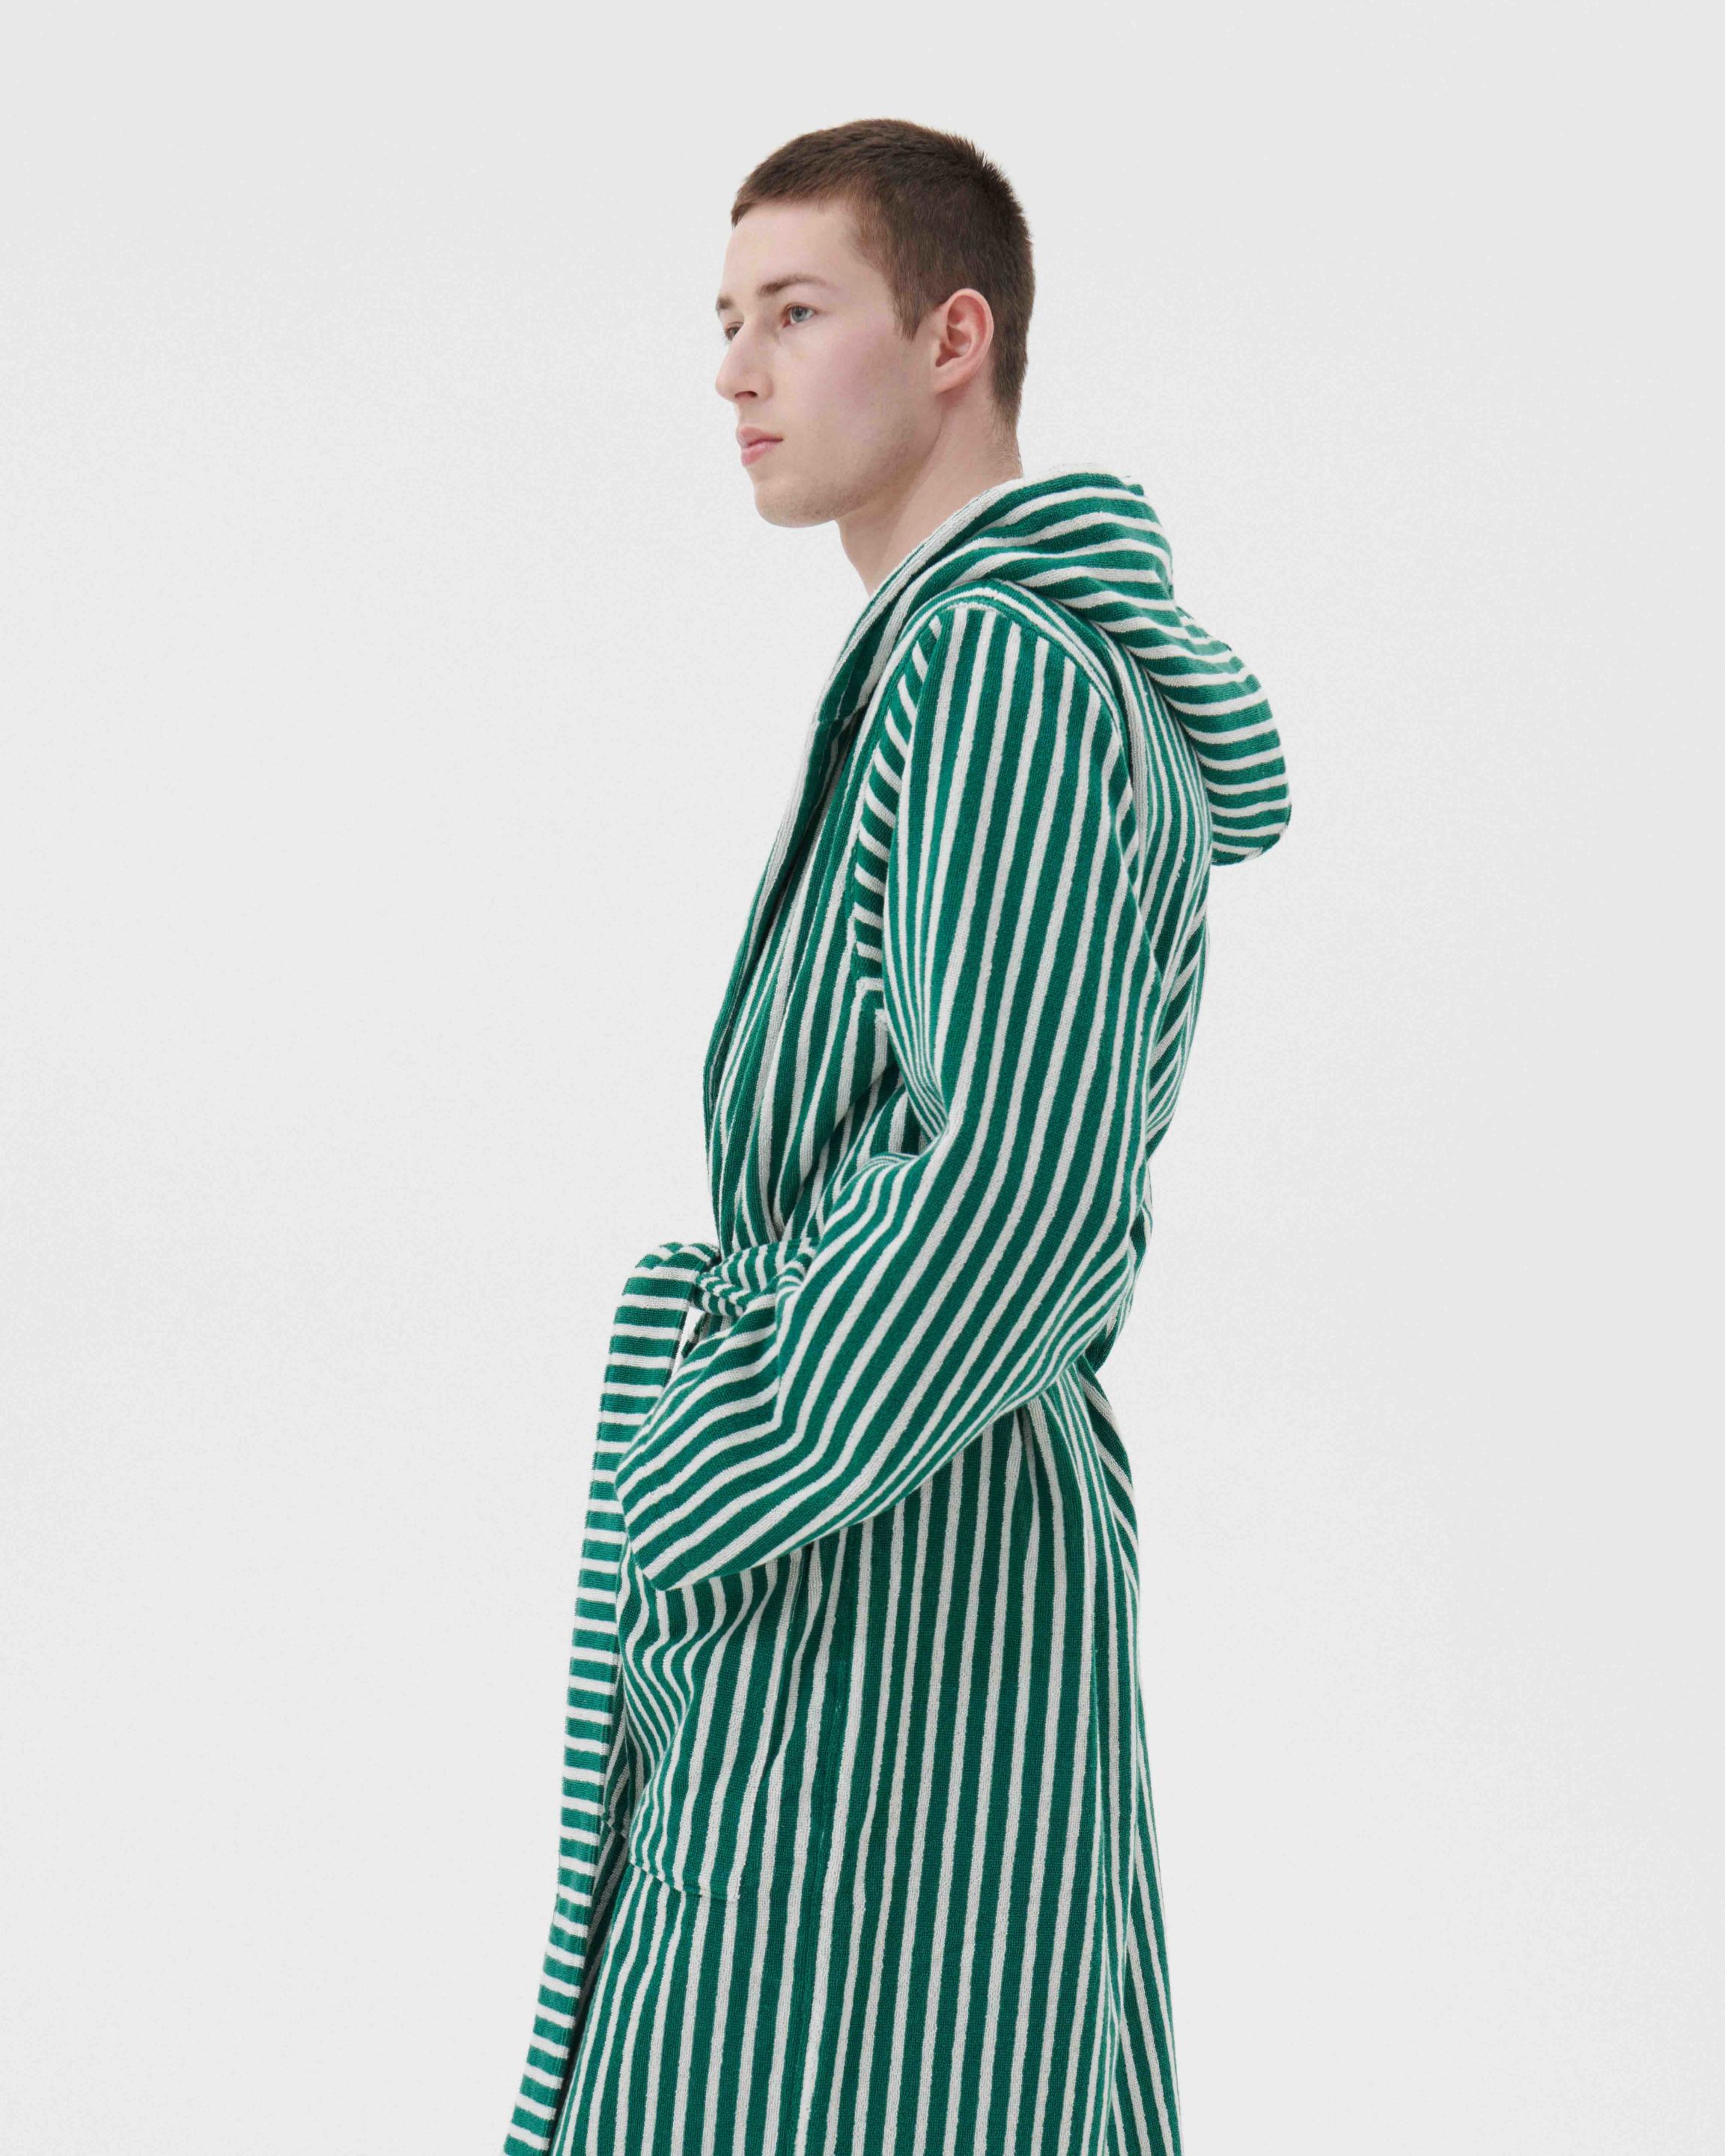 Male - Hooded Bathrobe - Green Teal Stripes